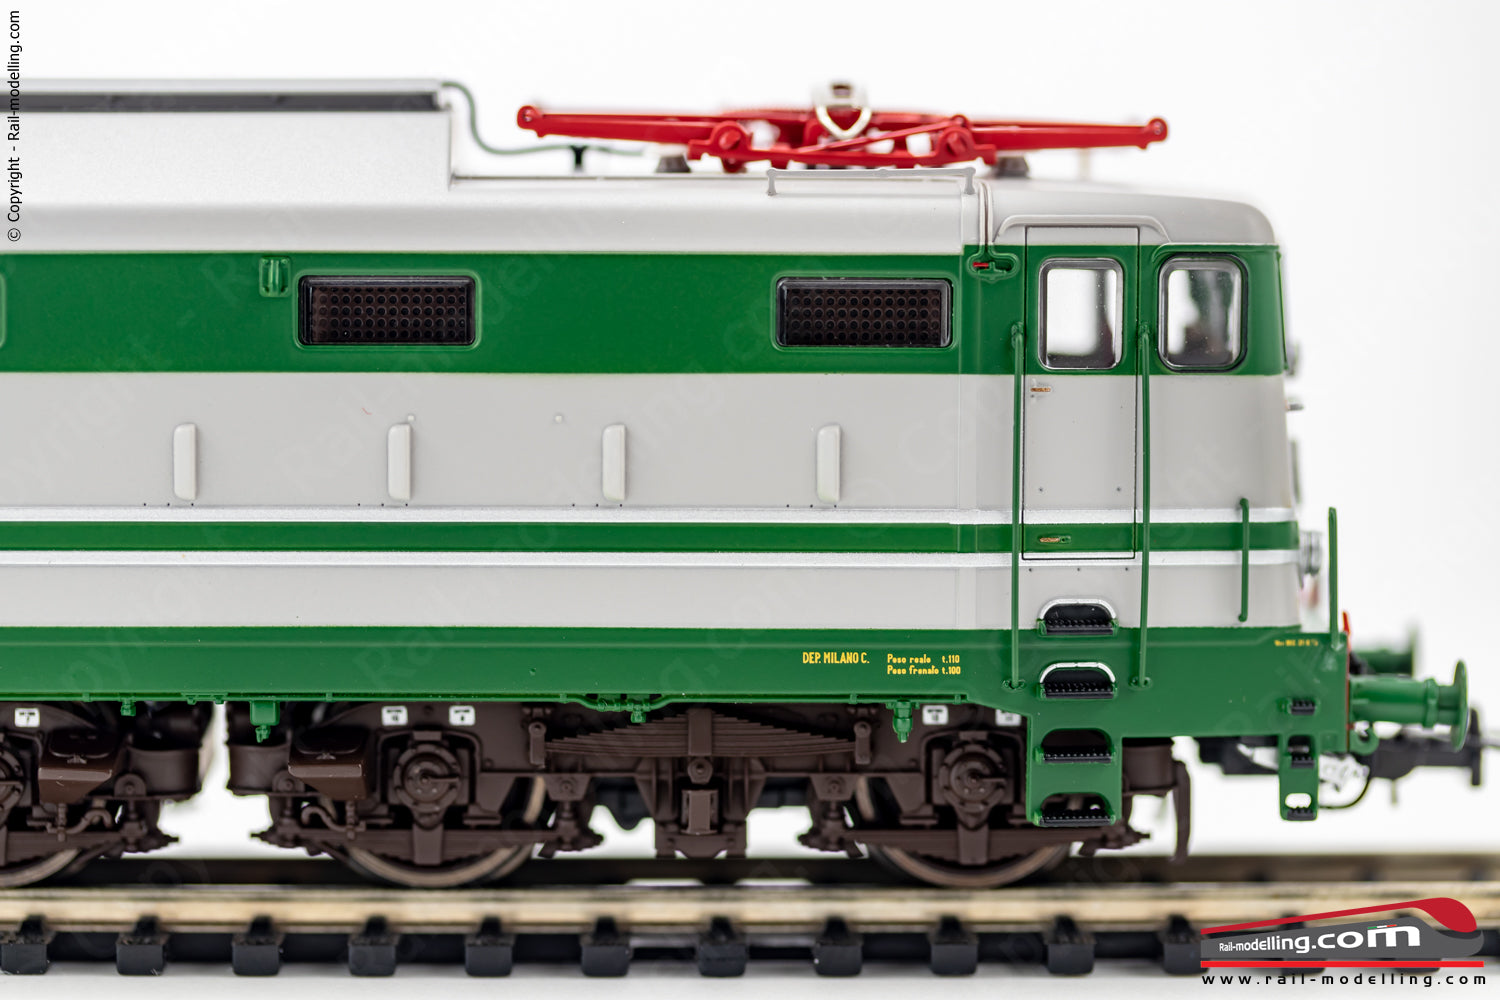 RIVAROSSI HR2867 - H0 1:87 - Locomotiva elettrica FS E.646.084 verde/grigio con modanature dep. Milano C.le Ep. IIIb